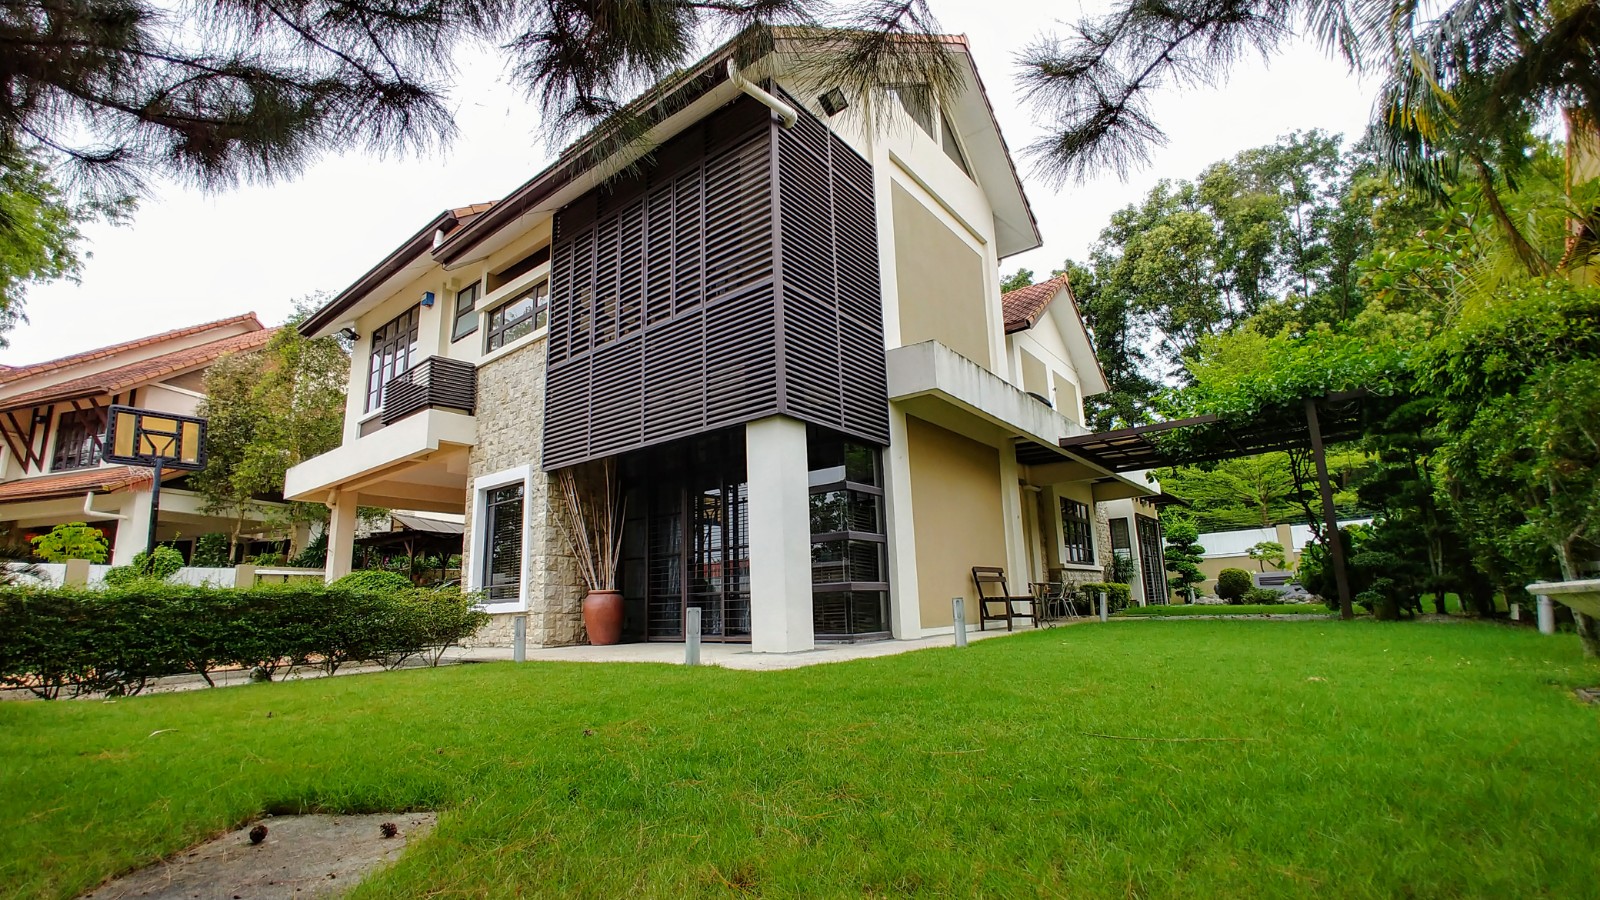 2 Sty Bungalow at Bidai Residence, Bukit Jelutong [LA:8000]